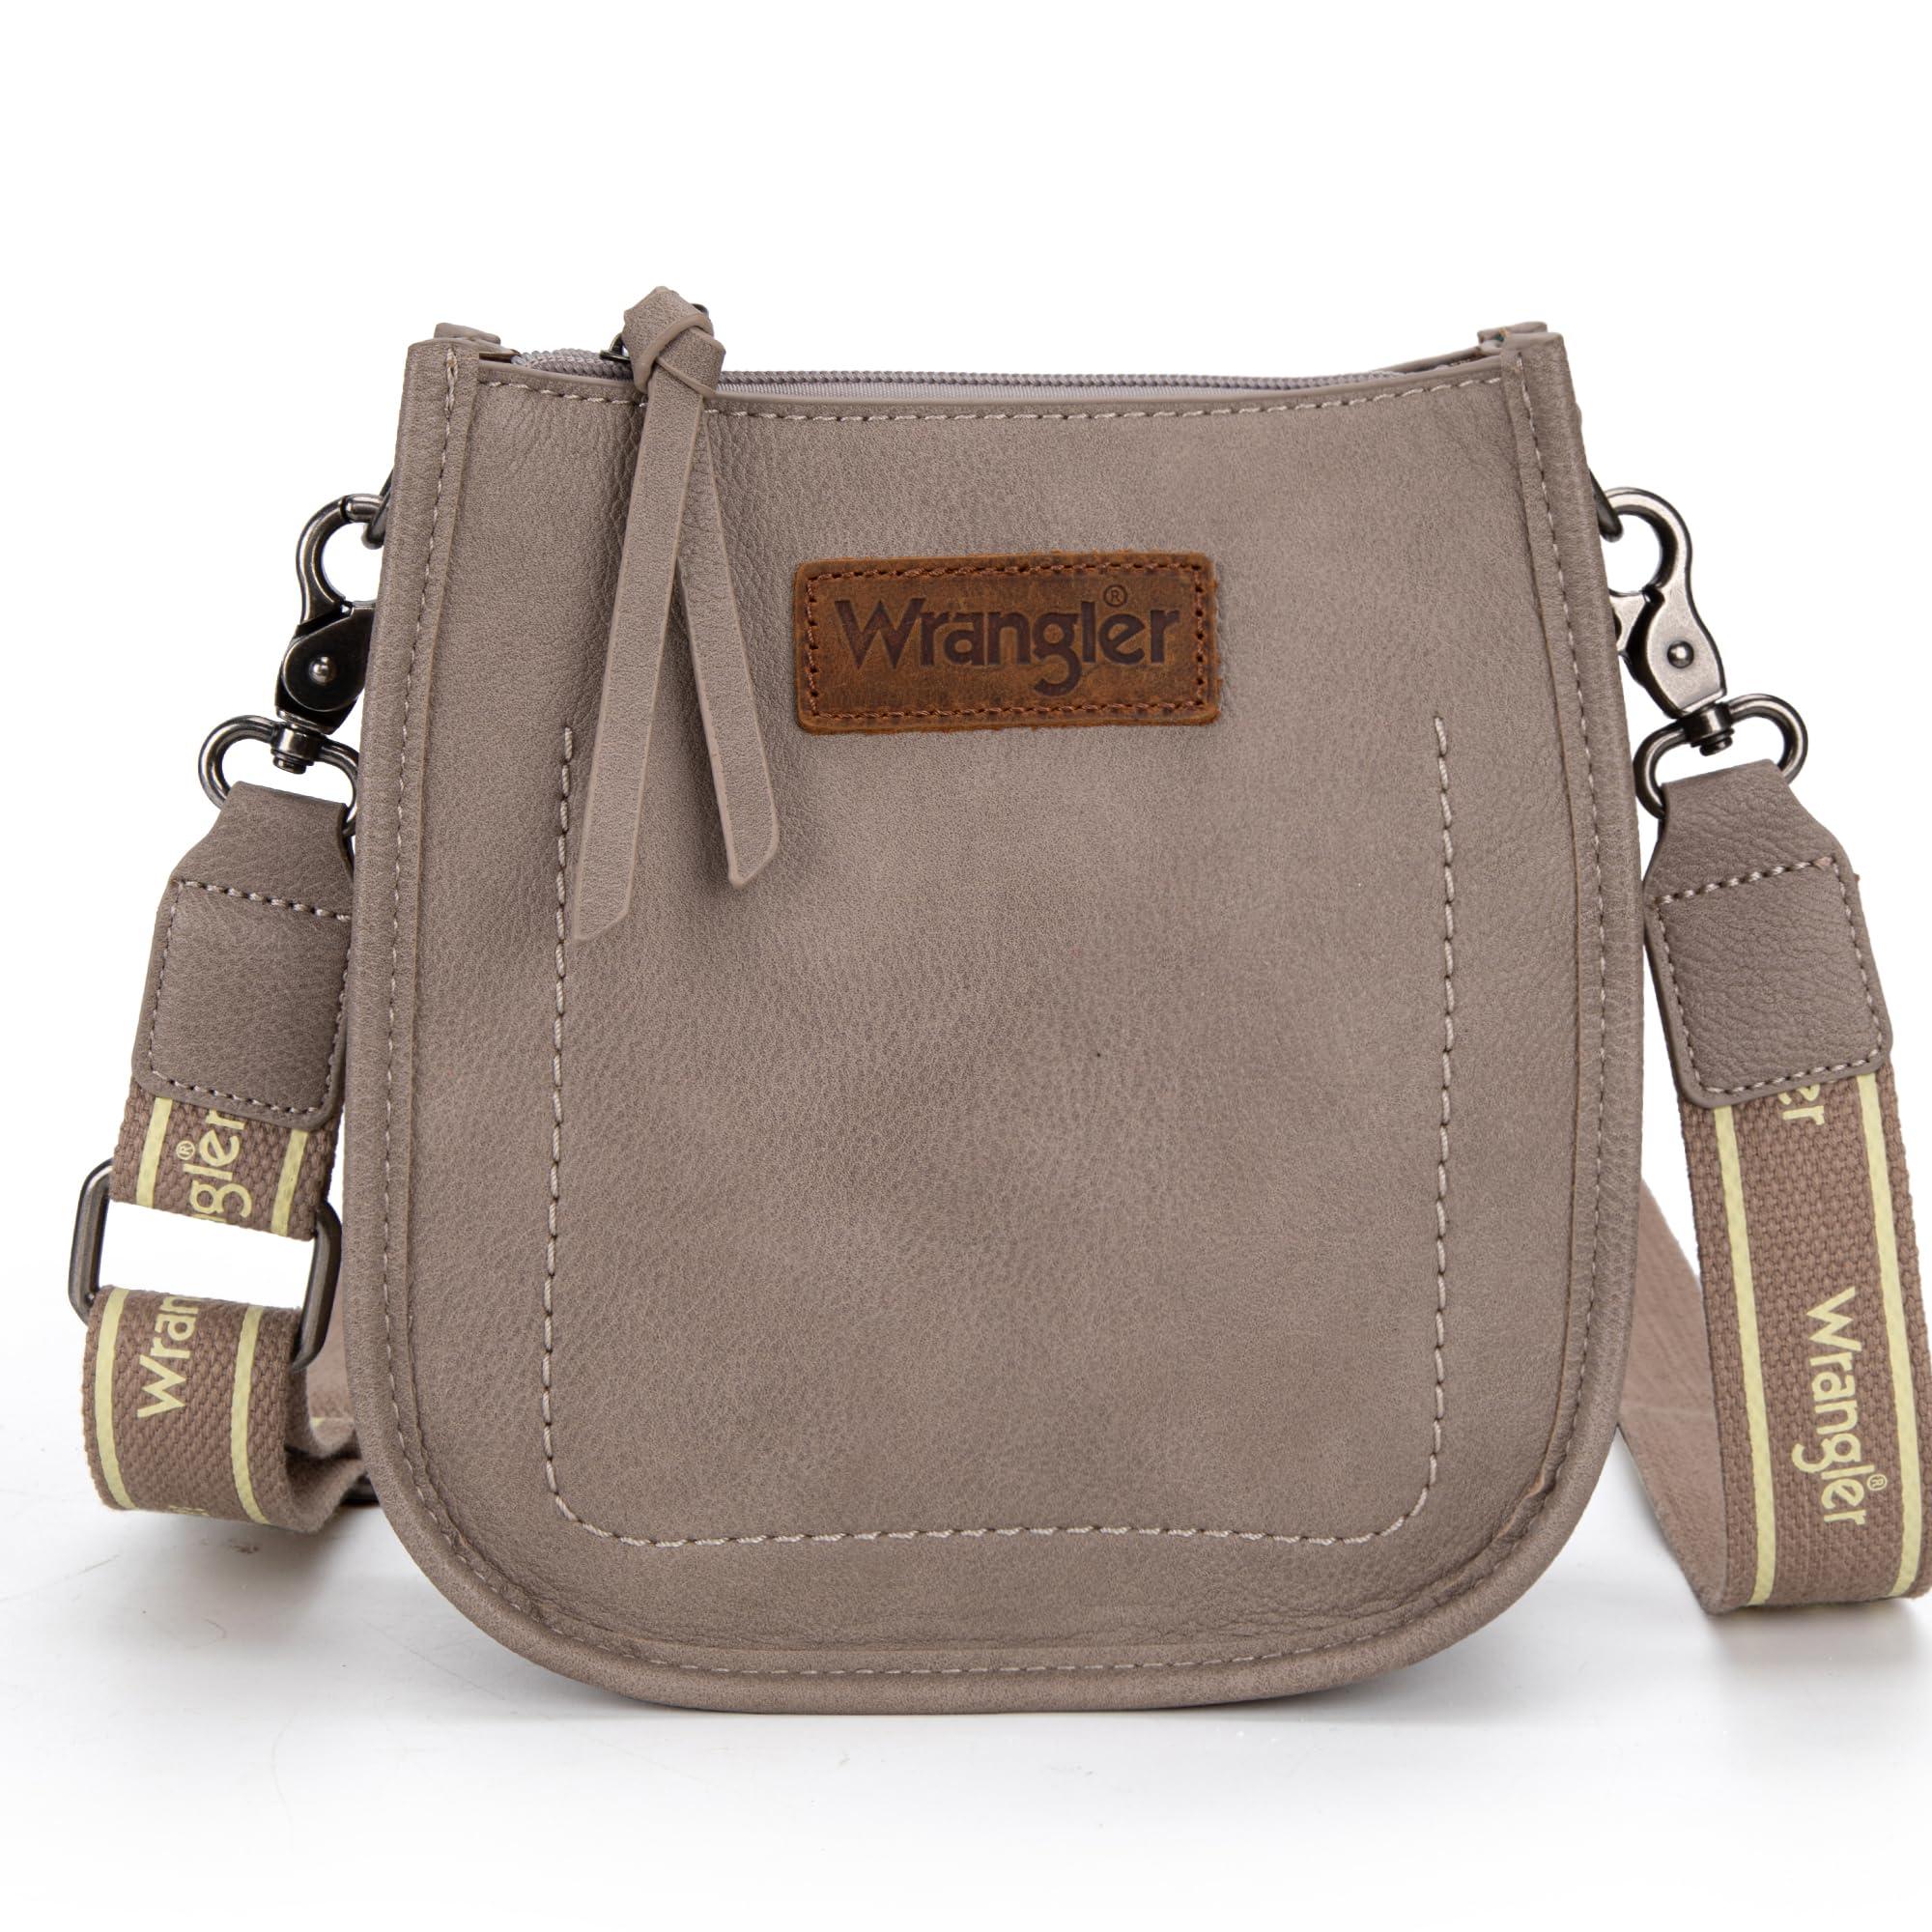 Wrangler Crossbody Taschen für Frauen Trendy Designer Mini Geldbörsen  Schulter Handtasche in Braun | Lyst DE